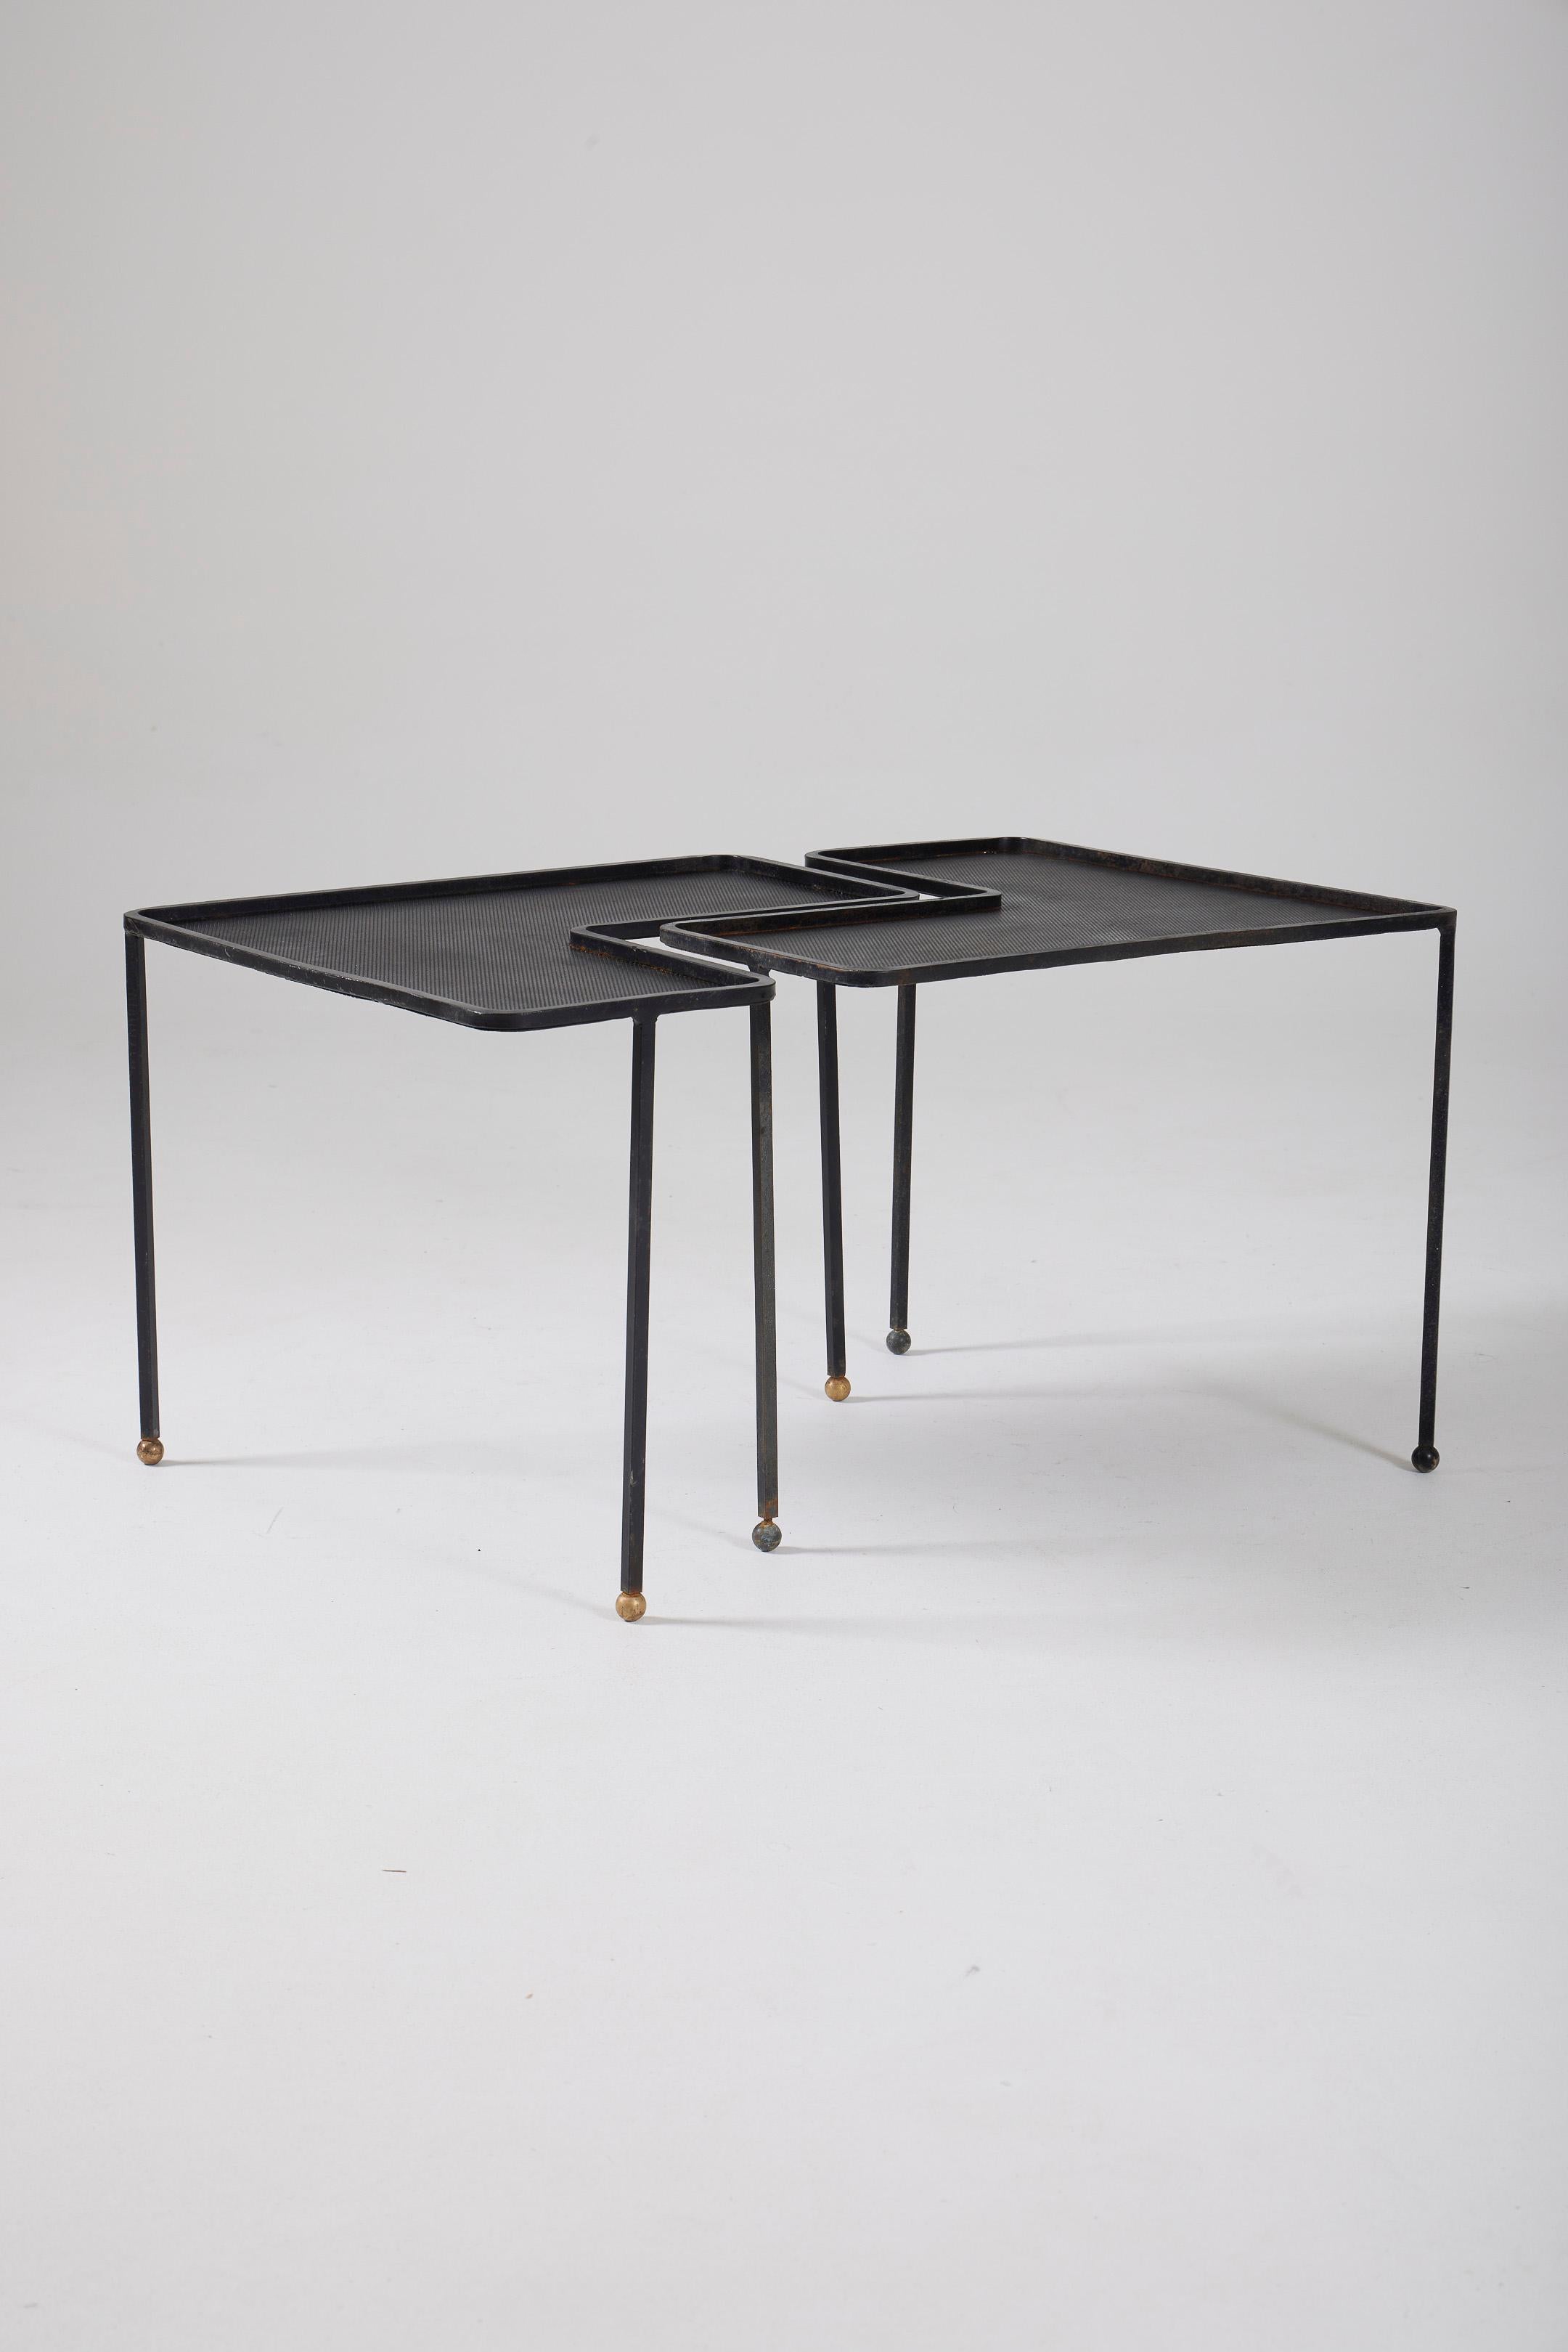 Satz von 2 Tischen Modell 'Domino' des französischen Designers Mathieu Matégot (1910-2001) in den 1950er Jahren (1953). Diese Tische haben eine schwarze, gelochte Metallplatte und ein schwarz lackiertes Metallrohrgestell. Guter Zustand.
DV570